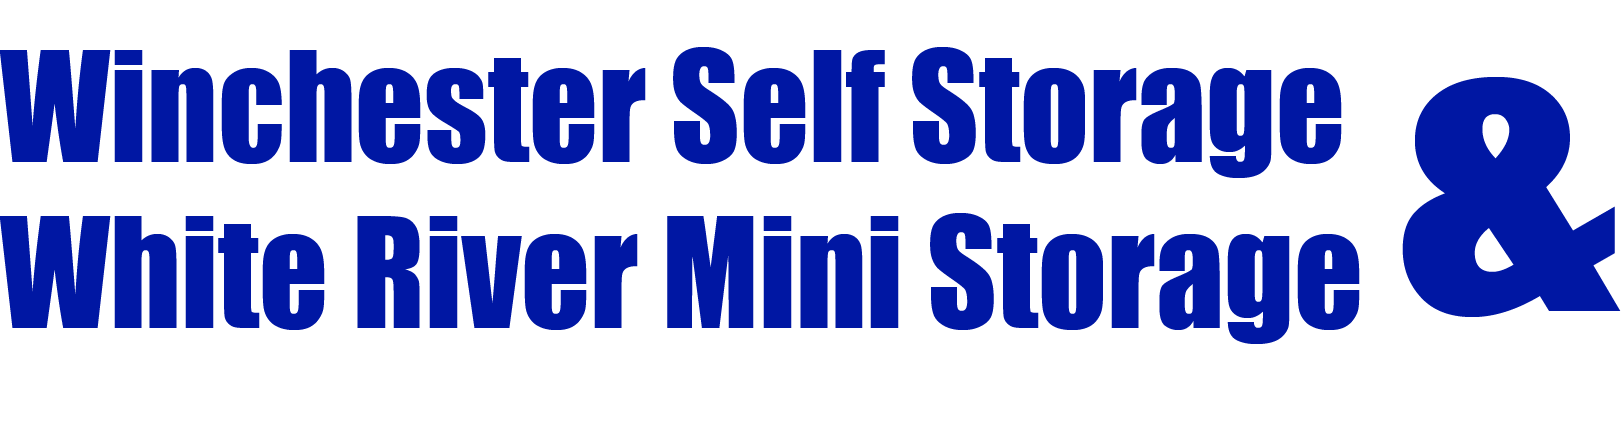 Winchester and White River Mini Storage Logo